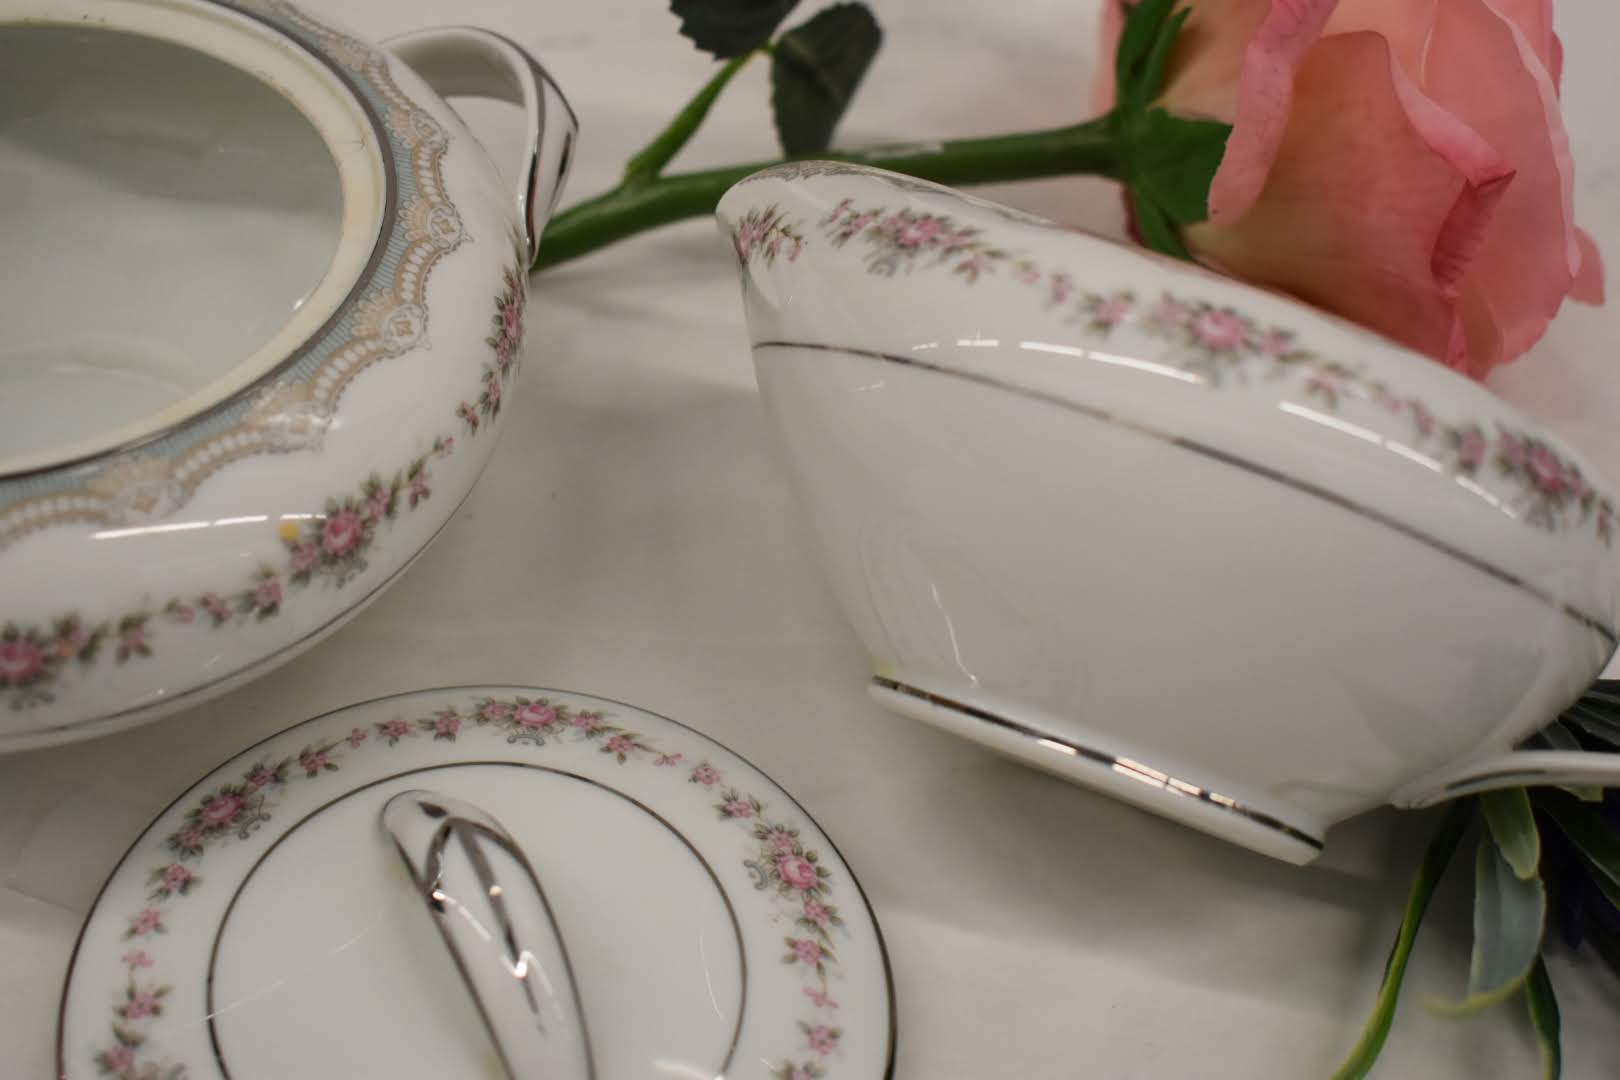 Noritake Glenwood - Fine Porcelain China - Platinum Rim - 5770 pattern - Sugar Bowl and Creamer